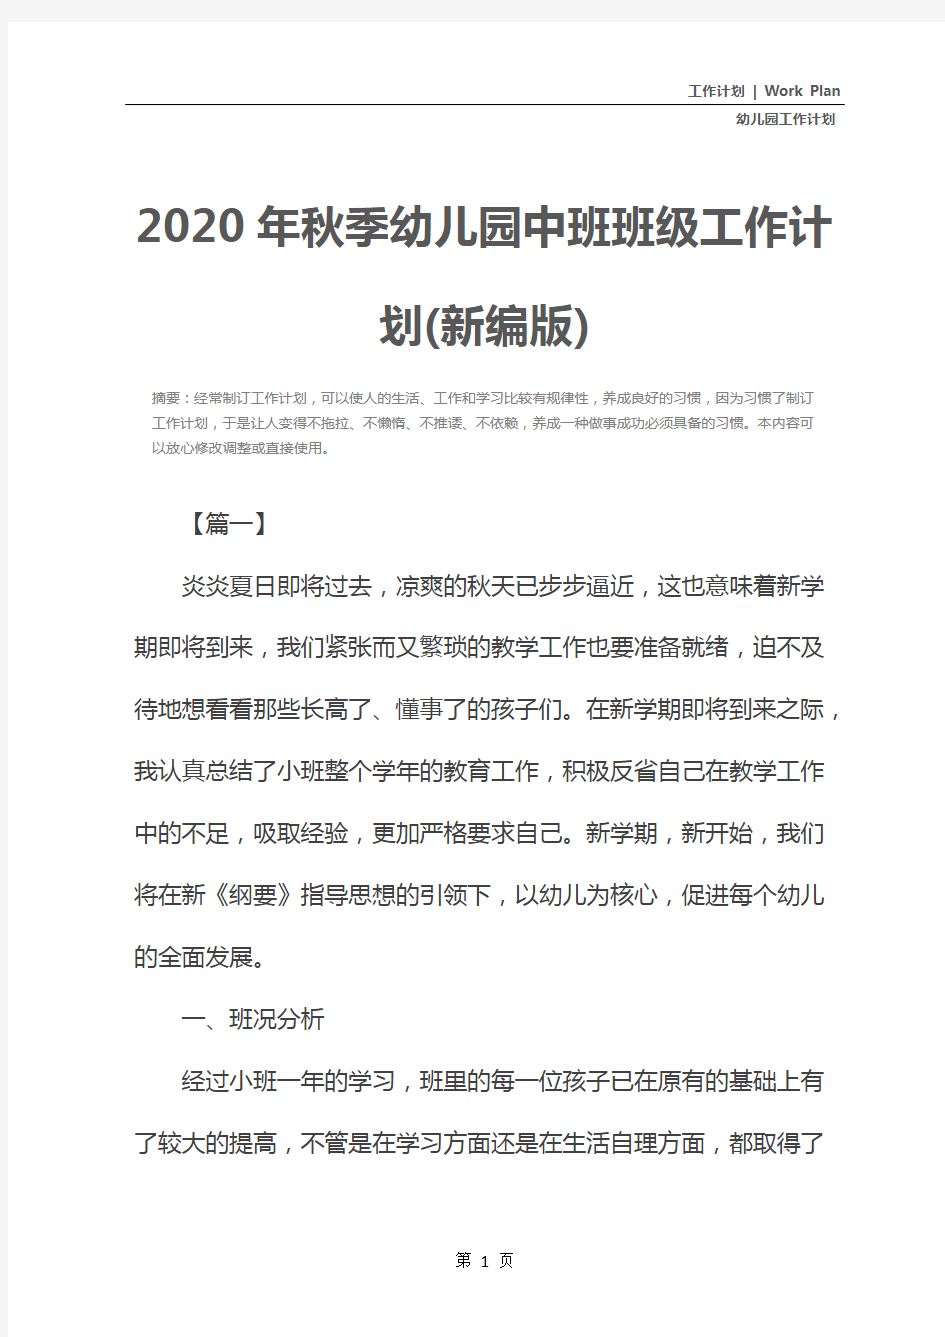 2020年秋季幼儿园中班班级工作计划(新编版)